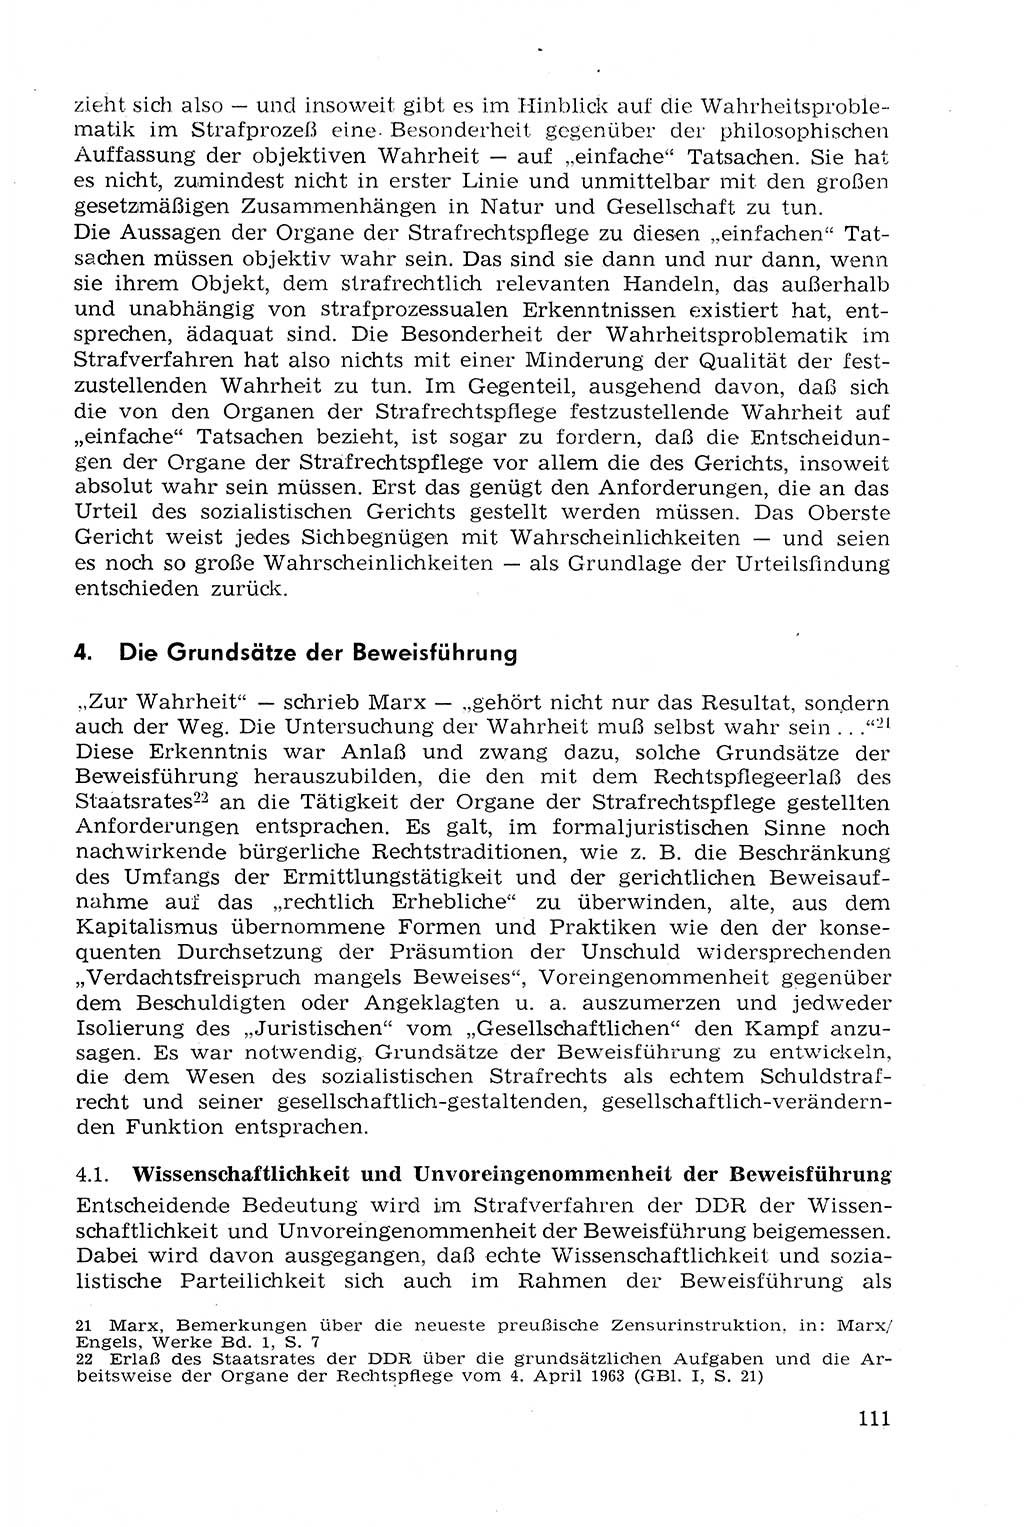 Strafprozeßrecht der DDR (Deutsche Demokratische Republik), Lehrmaterial 1969, Seite 111 (Strafprozeßr. DDR Lehrmat. 1969, S. 111)